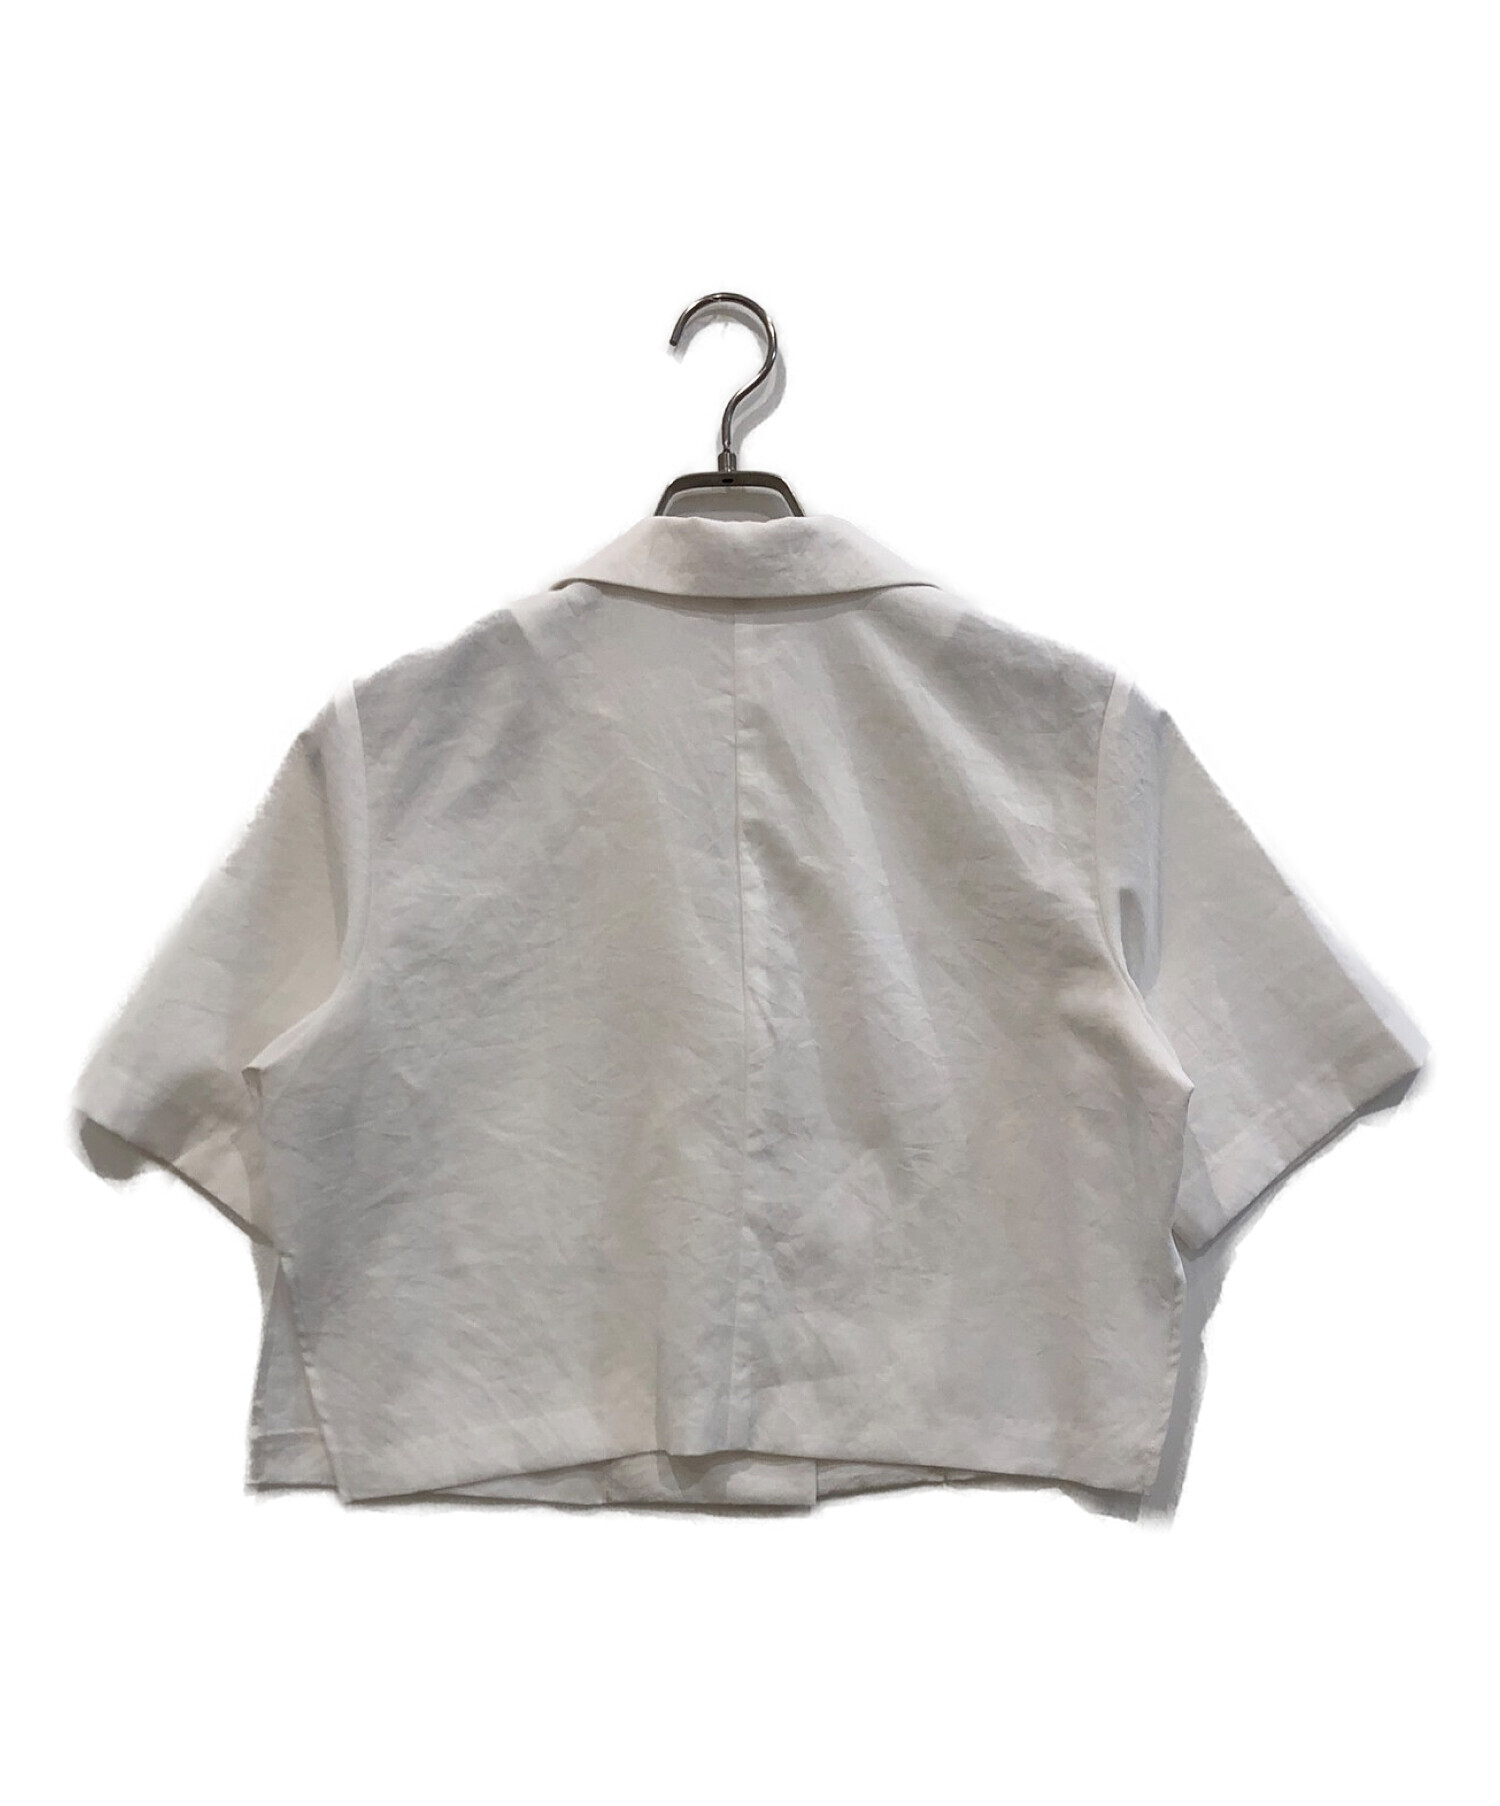 CADUNE (カデュネ) 半袖シャツジャケット ホワイト サイズ:38